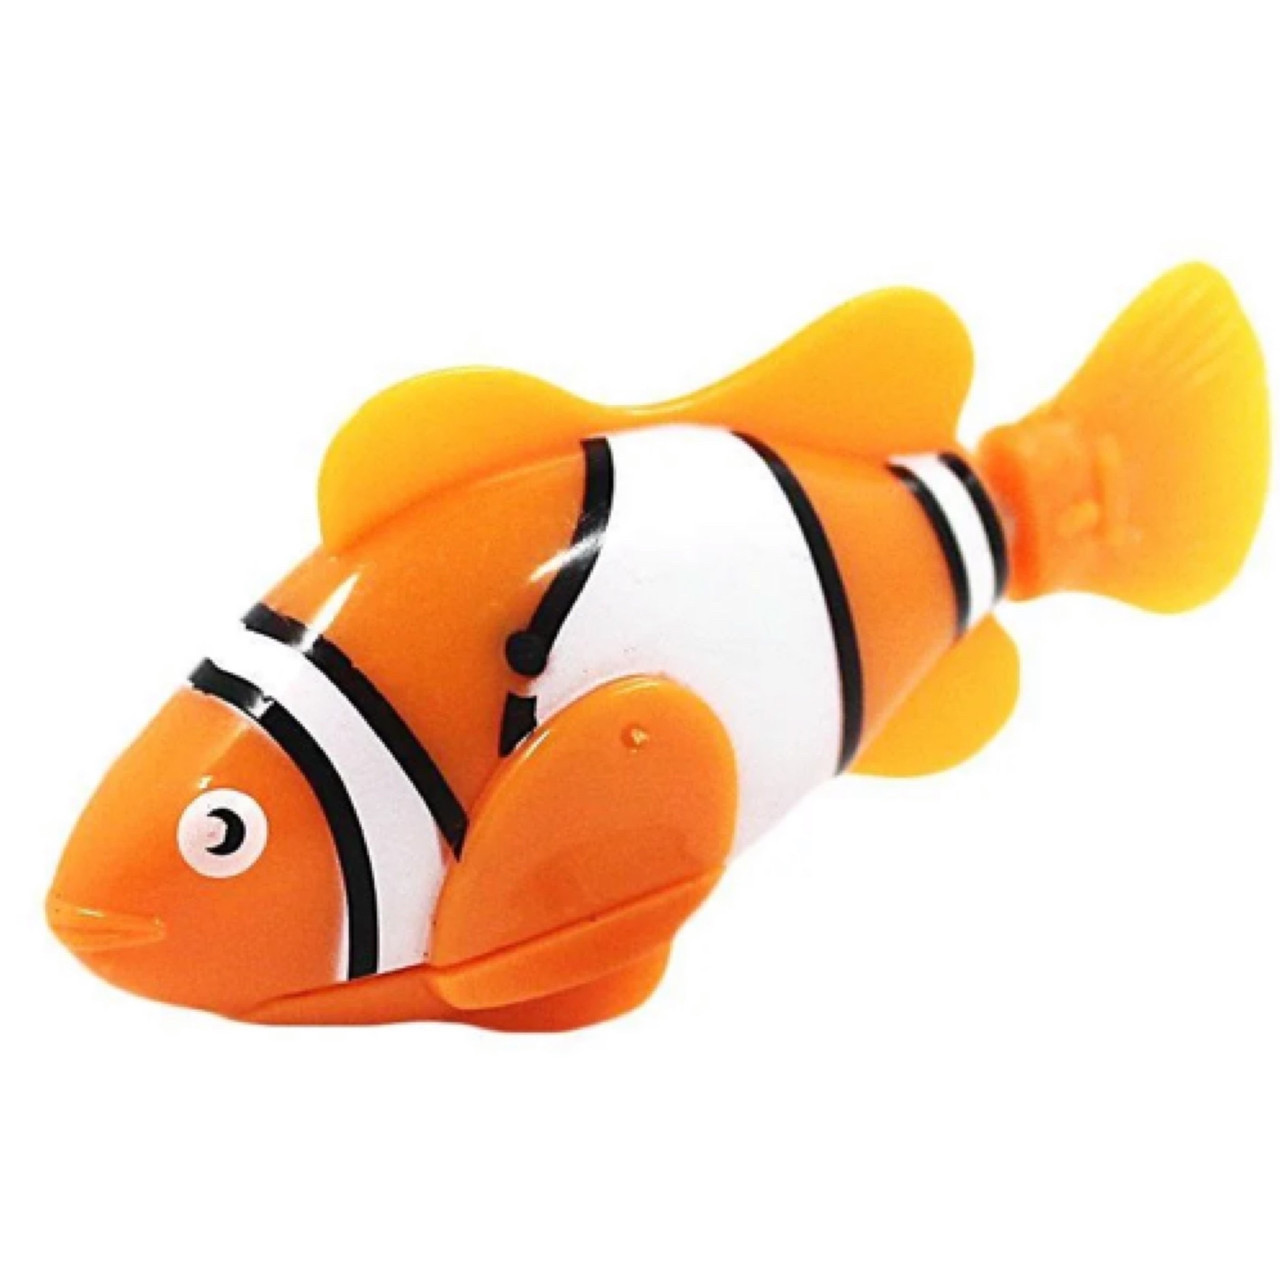 Интерактивная игрушка рыбка-робот (роборыбка) Robo Fish Немо оранжевая